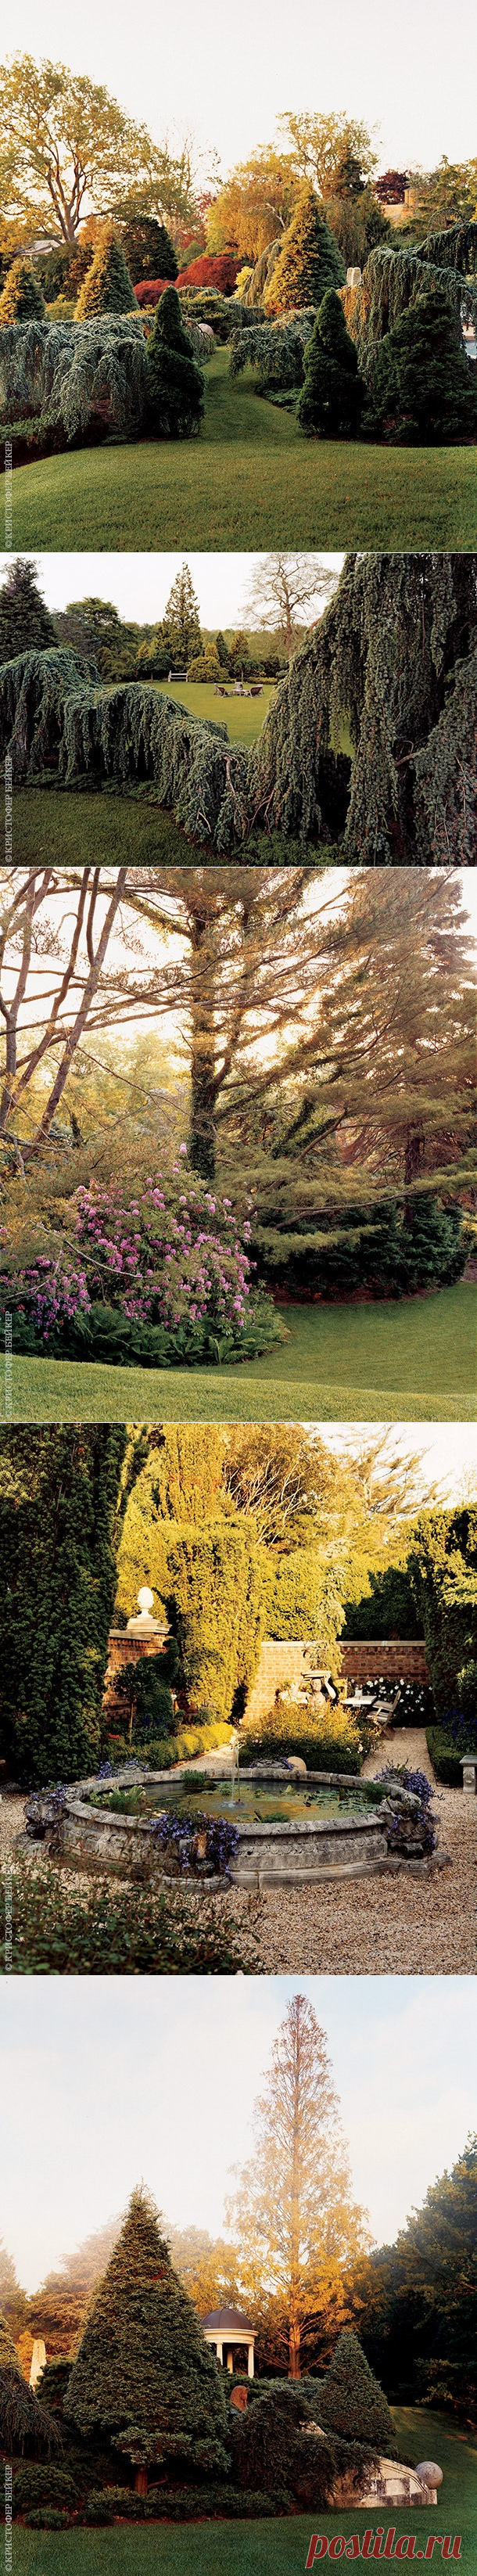 Пейзажный сад Тони Инграо и Ренди Кемпера в Англии в Ист-Хэмптоне | Admagazine | AD Magazine